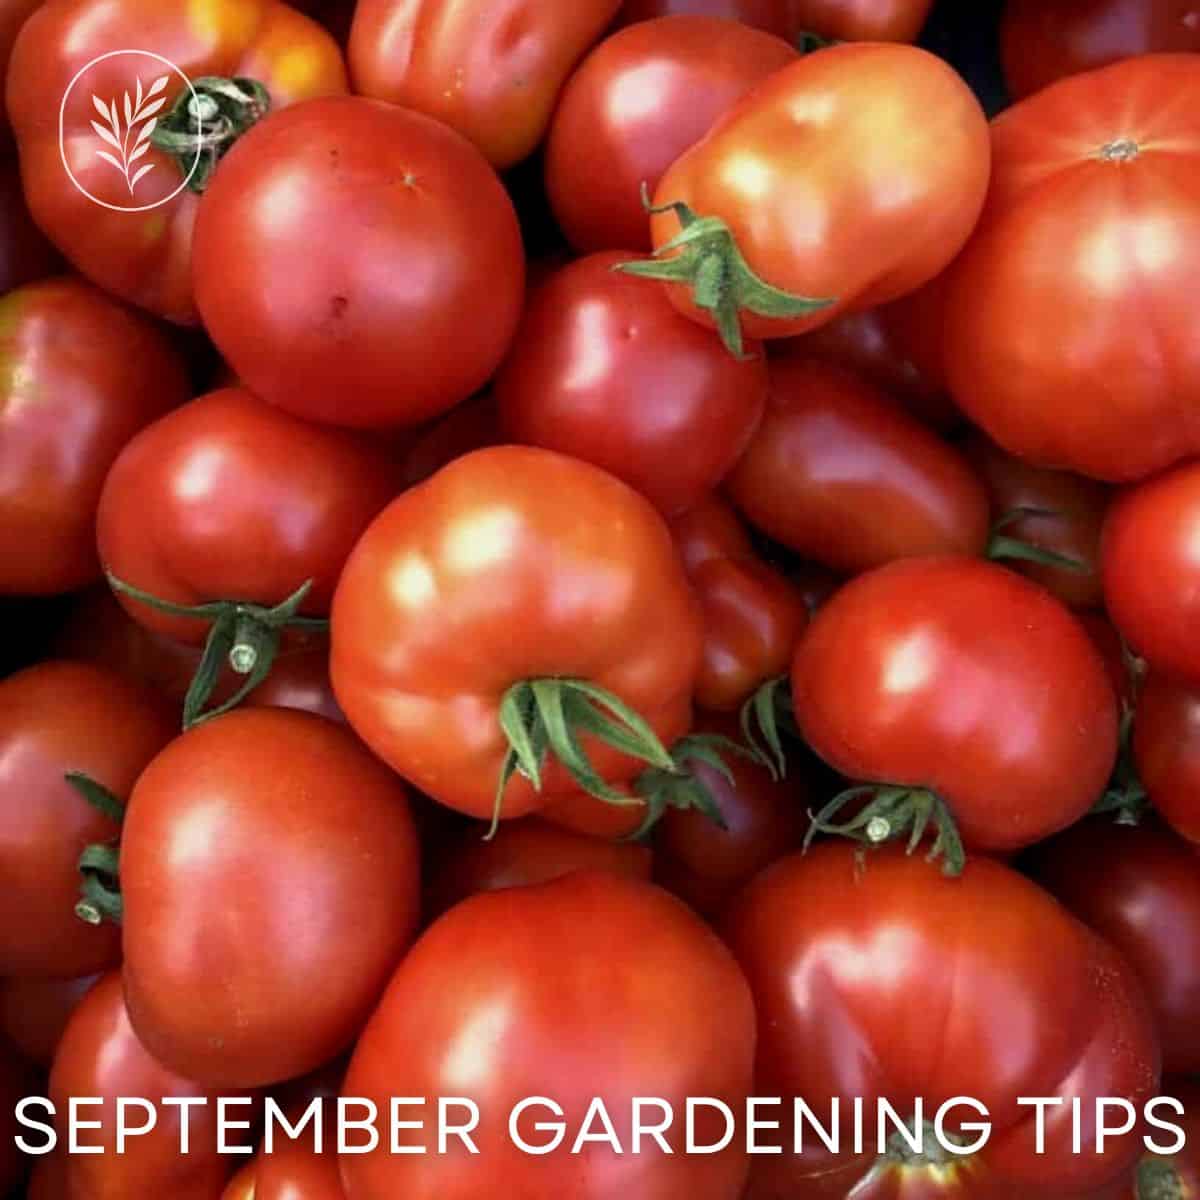 September gardening tips via @home4theharvest